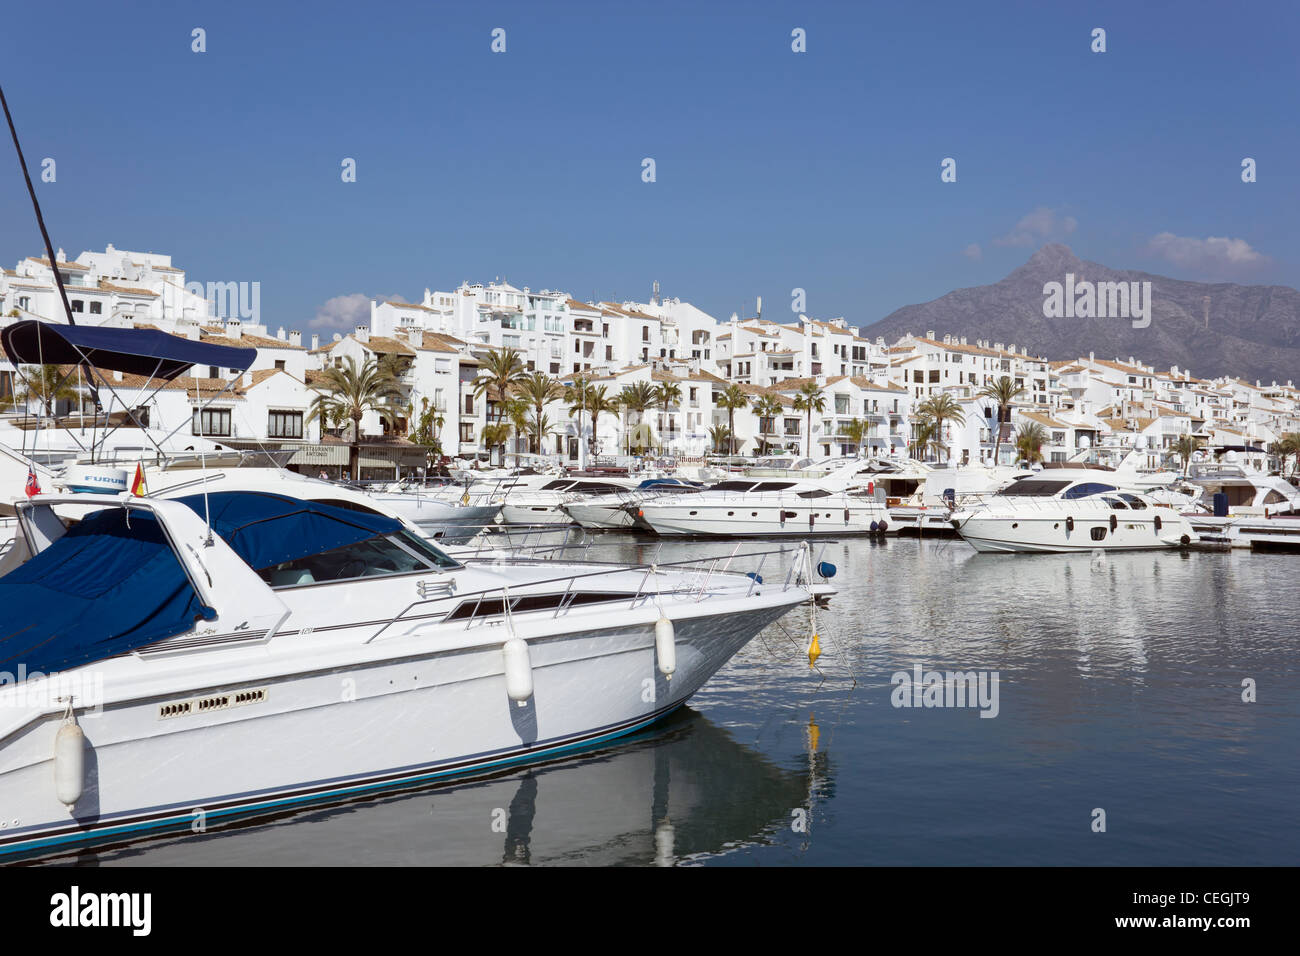 Luxury yachts moored at El Puerto José Banús, Marbella, Costa del Sol, Andalucia, Spain Stock Photo